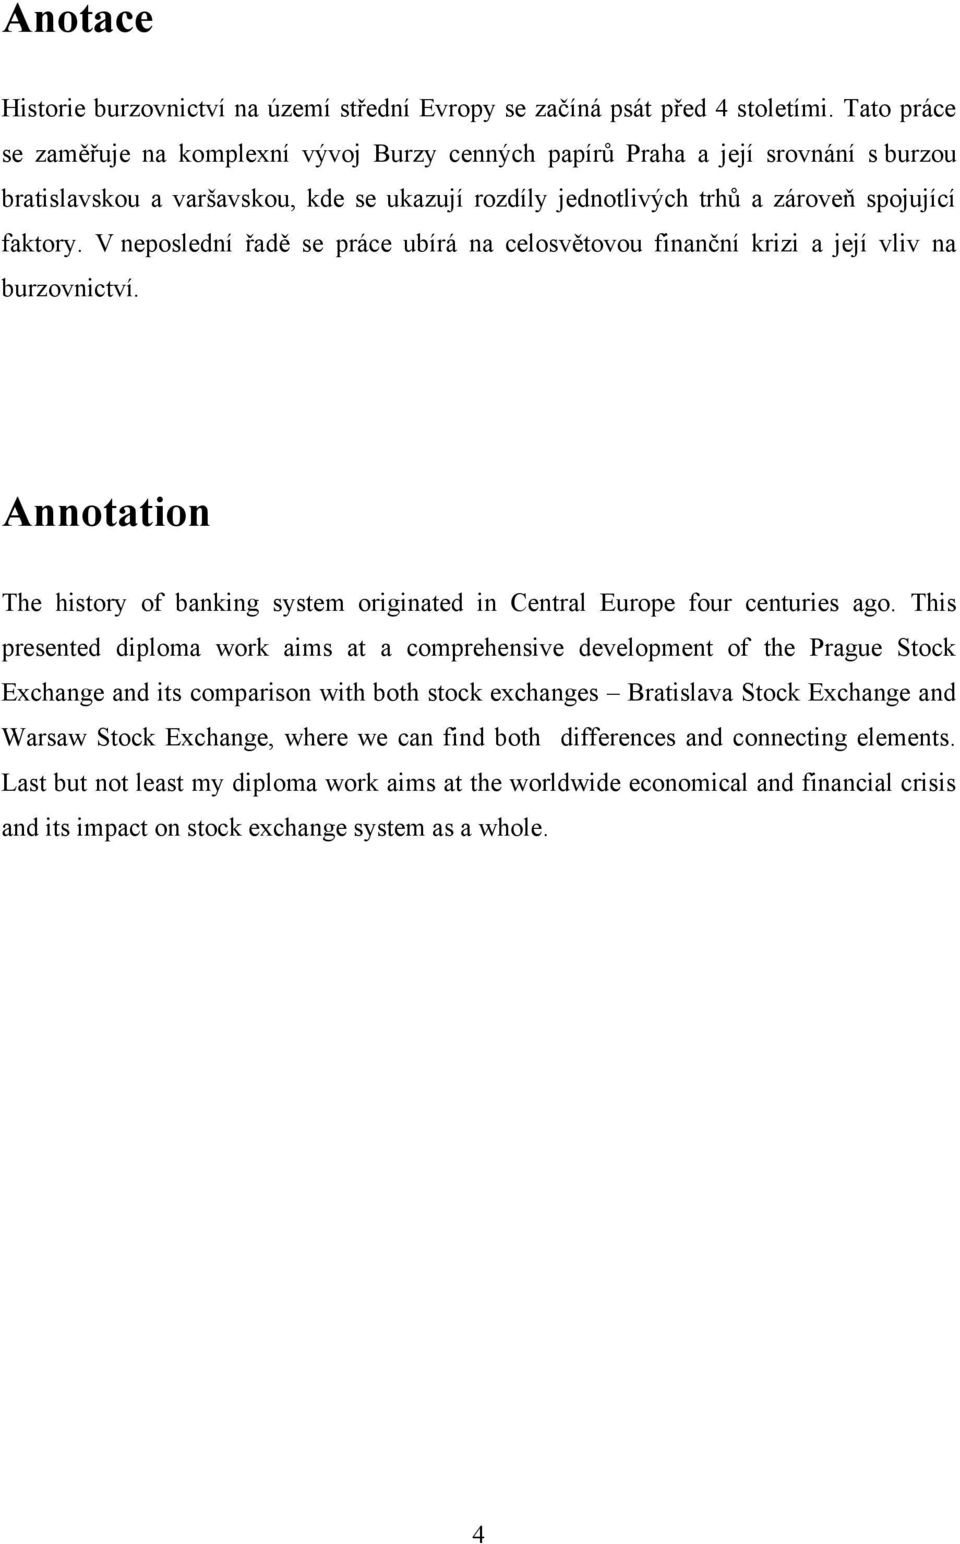 V neposlední řadě se práce ubírá na celosvětovou finanční krizi a její vliv na burzovnictví. Annotation The history of banking system originated in Central Europe four centuries ago.